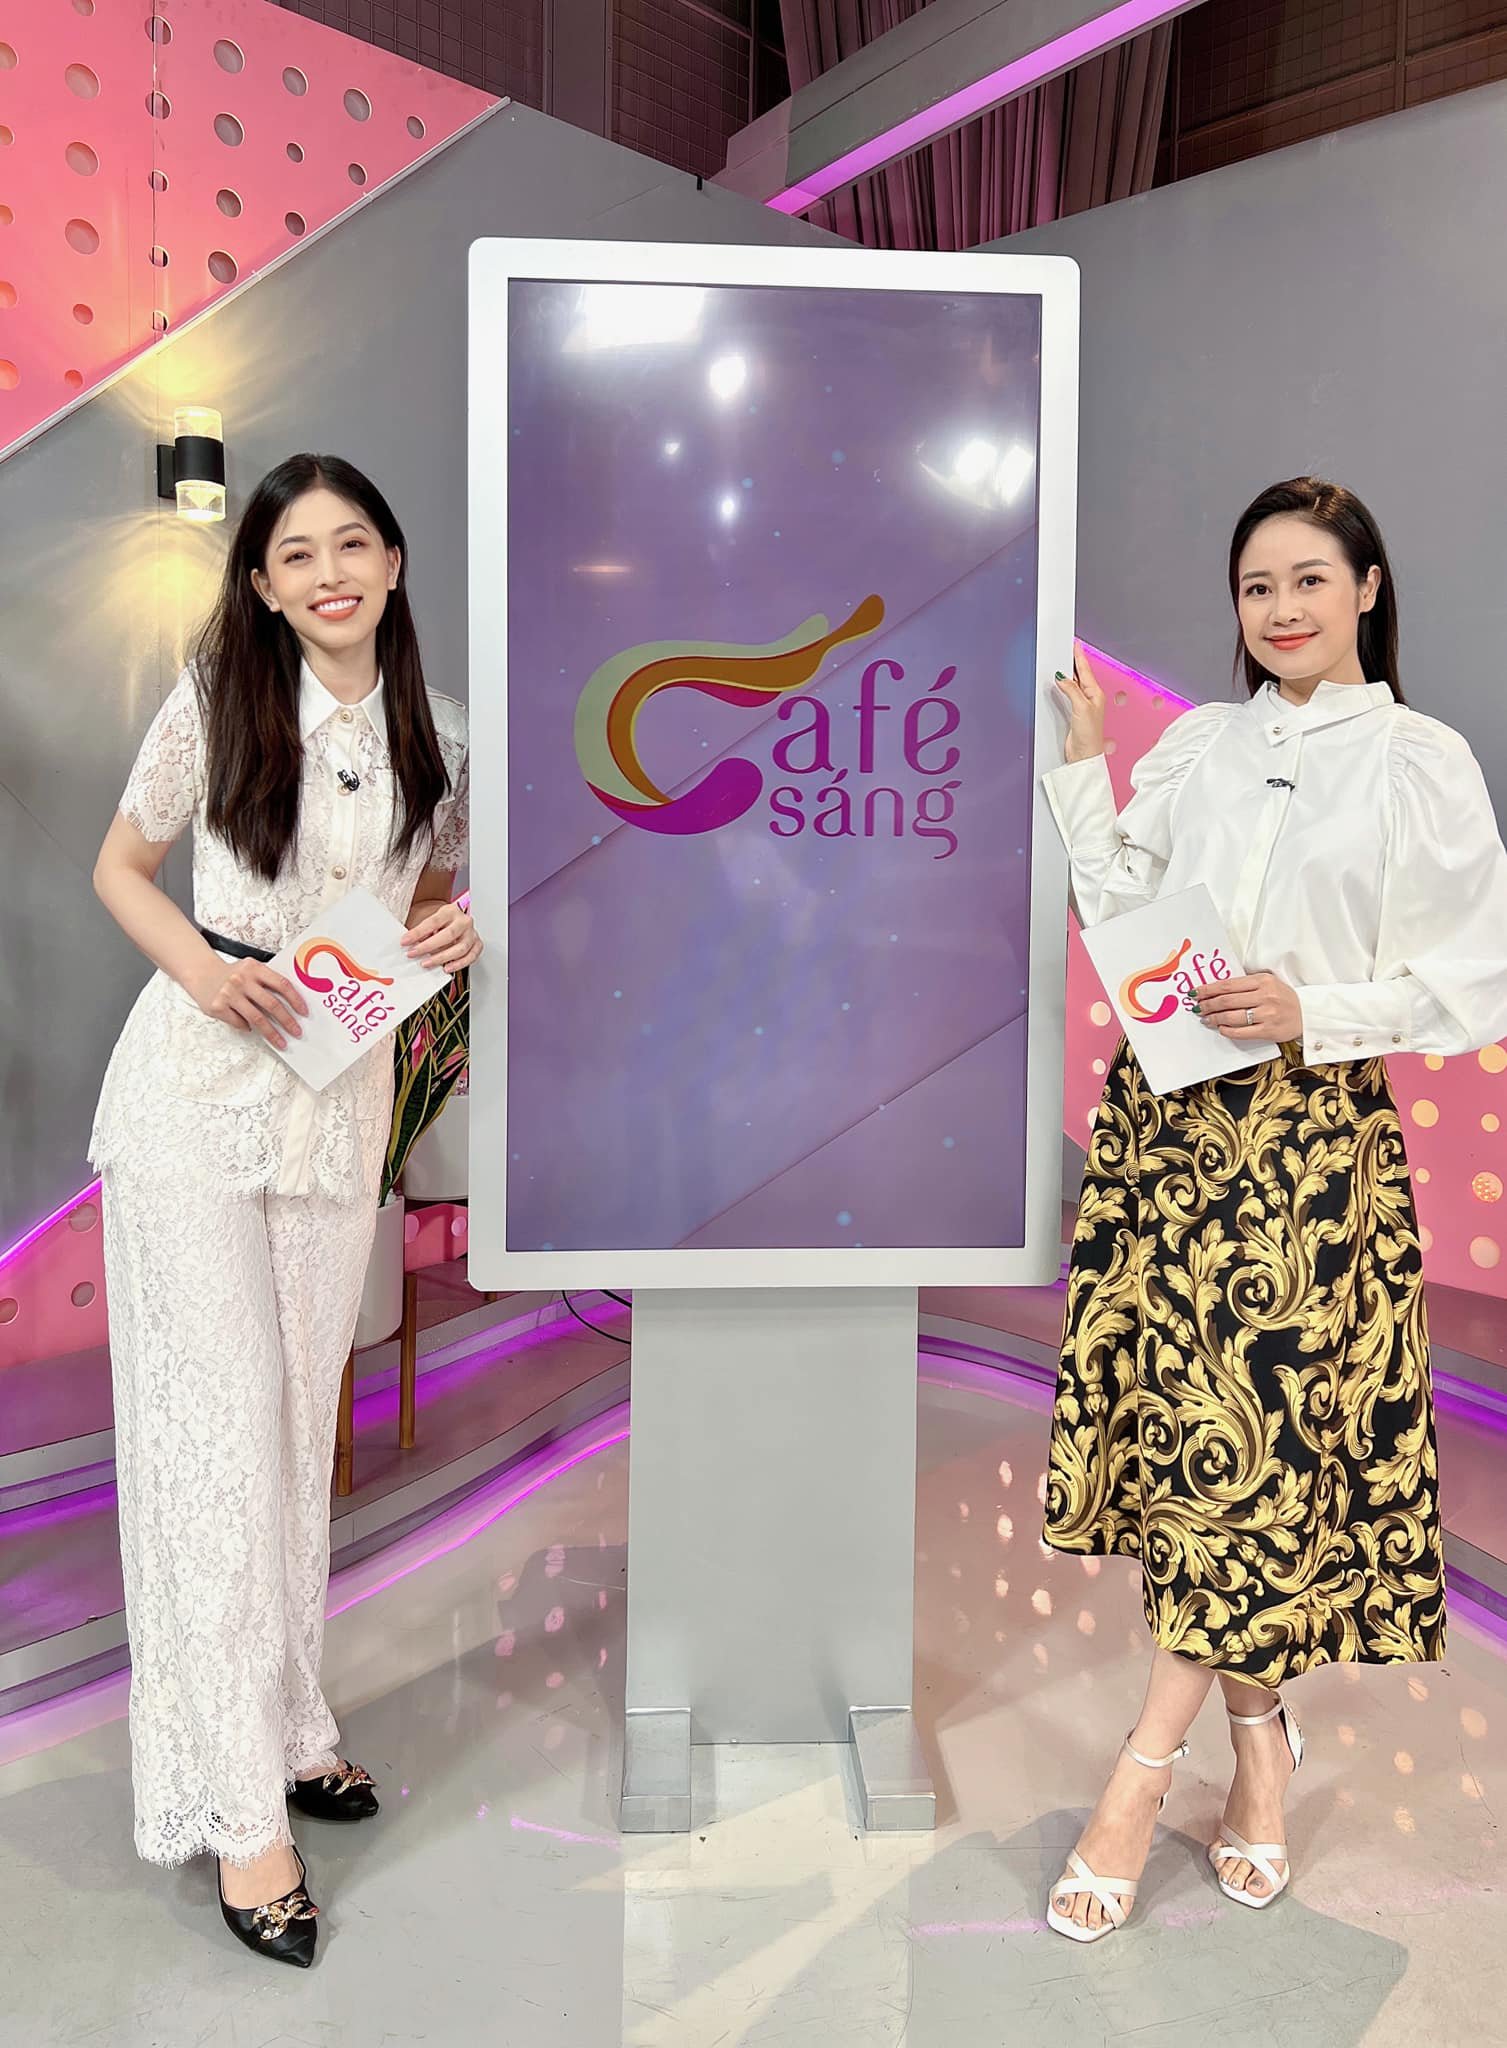 Á hậu Phương Nga cùng "tiền bối" Phí Linh dẫn Café sáng với VTV3